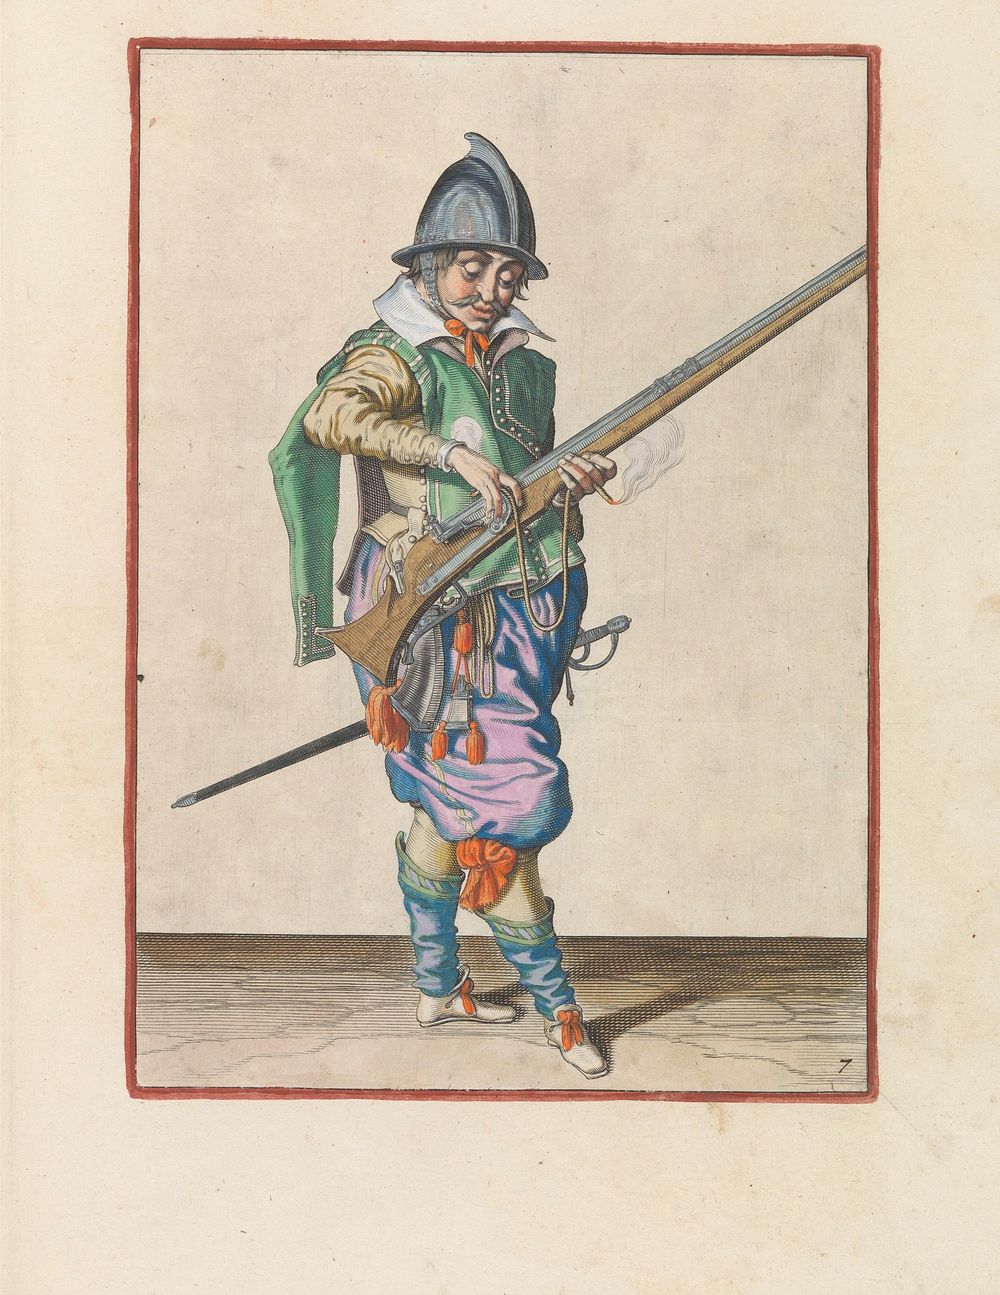 Soldaat die zijn lont op de haan van zijn roer drukt (c. 1597 - 1607) by Jacques de Gheyn II and Jacques de Gheyn II